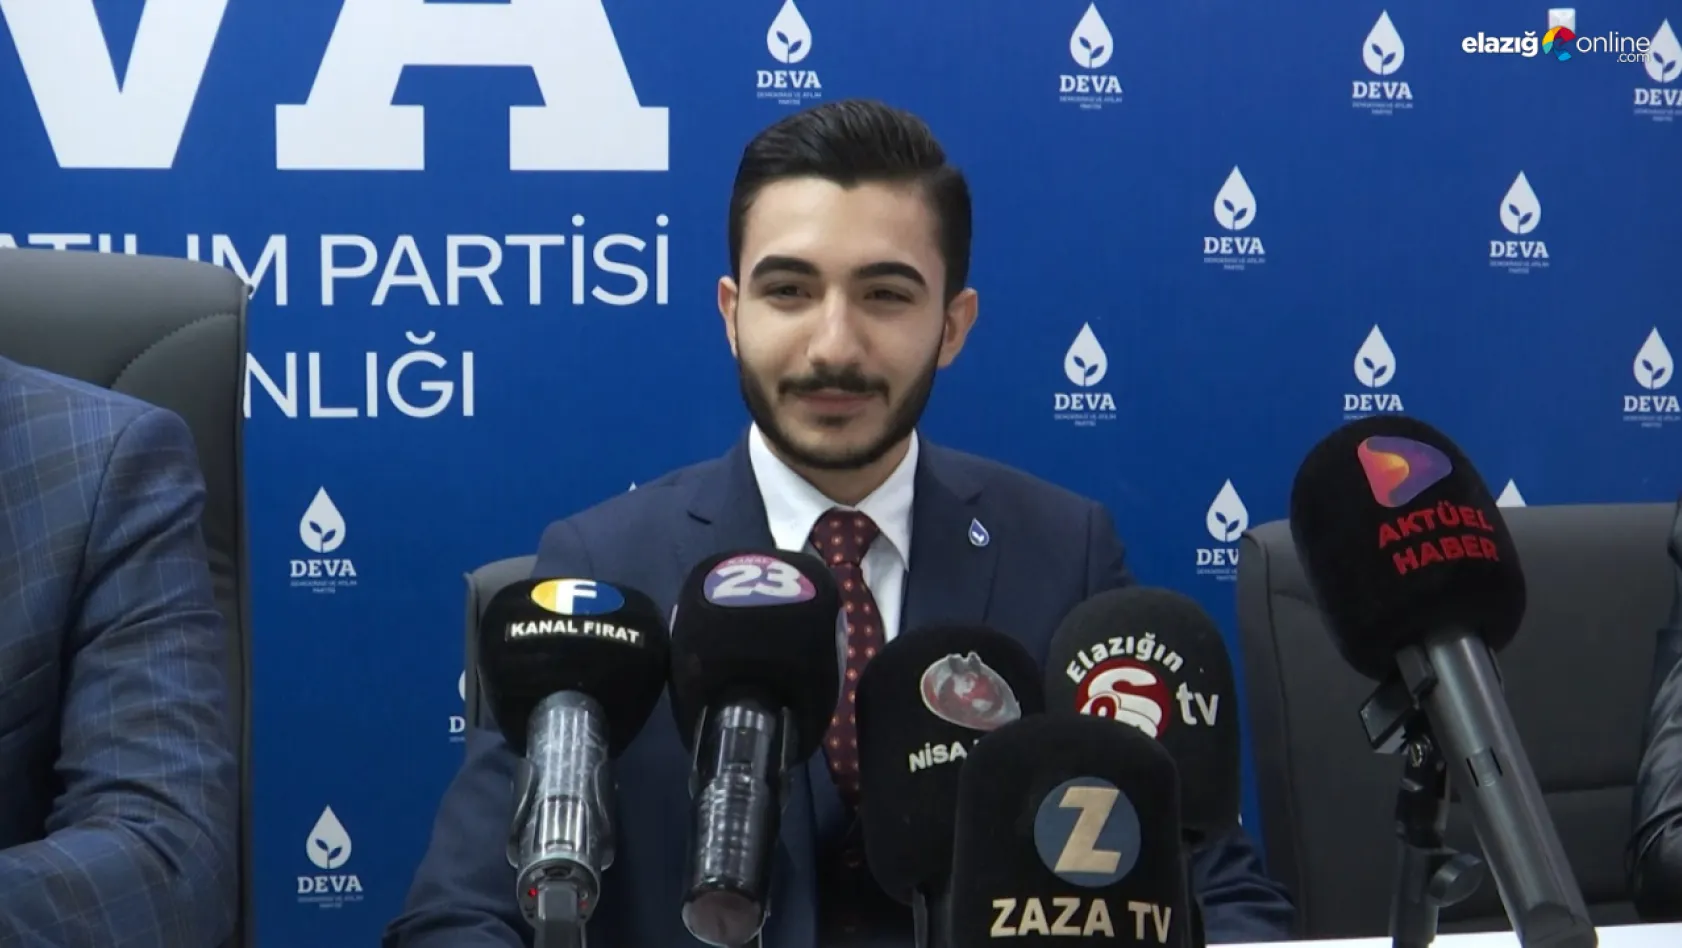 Sait Utkucan Öznay DEVA Partisi'nden aday adaylığını açıkladı